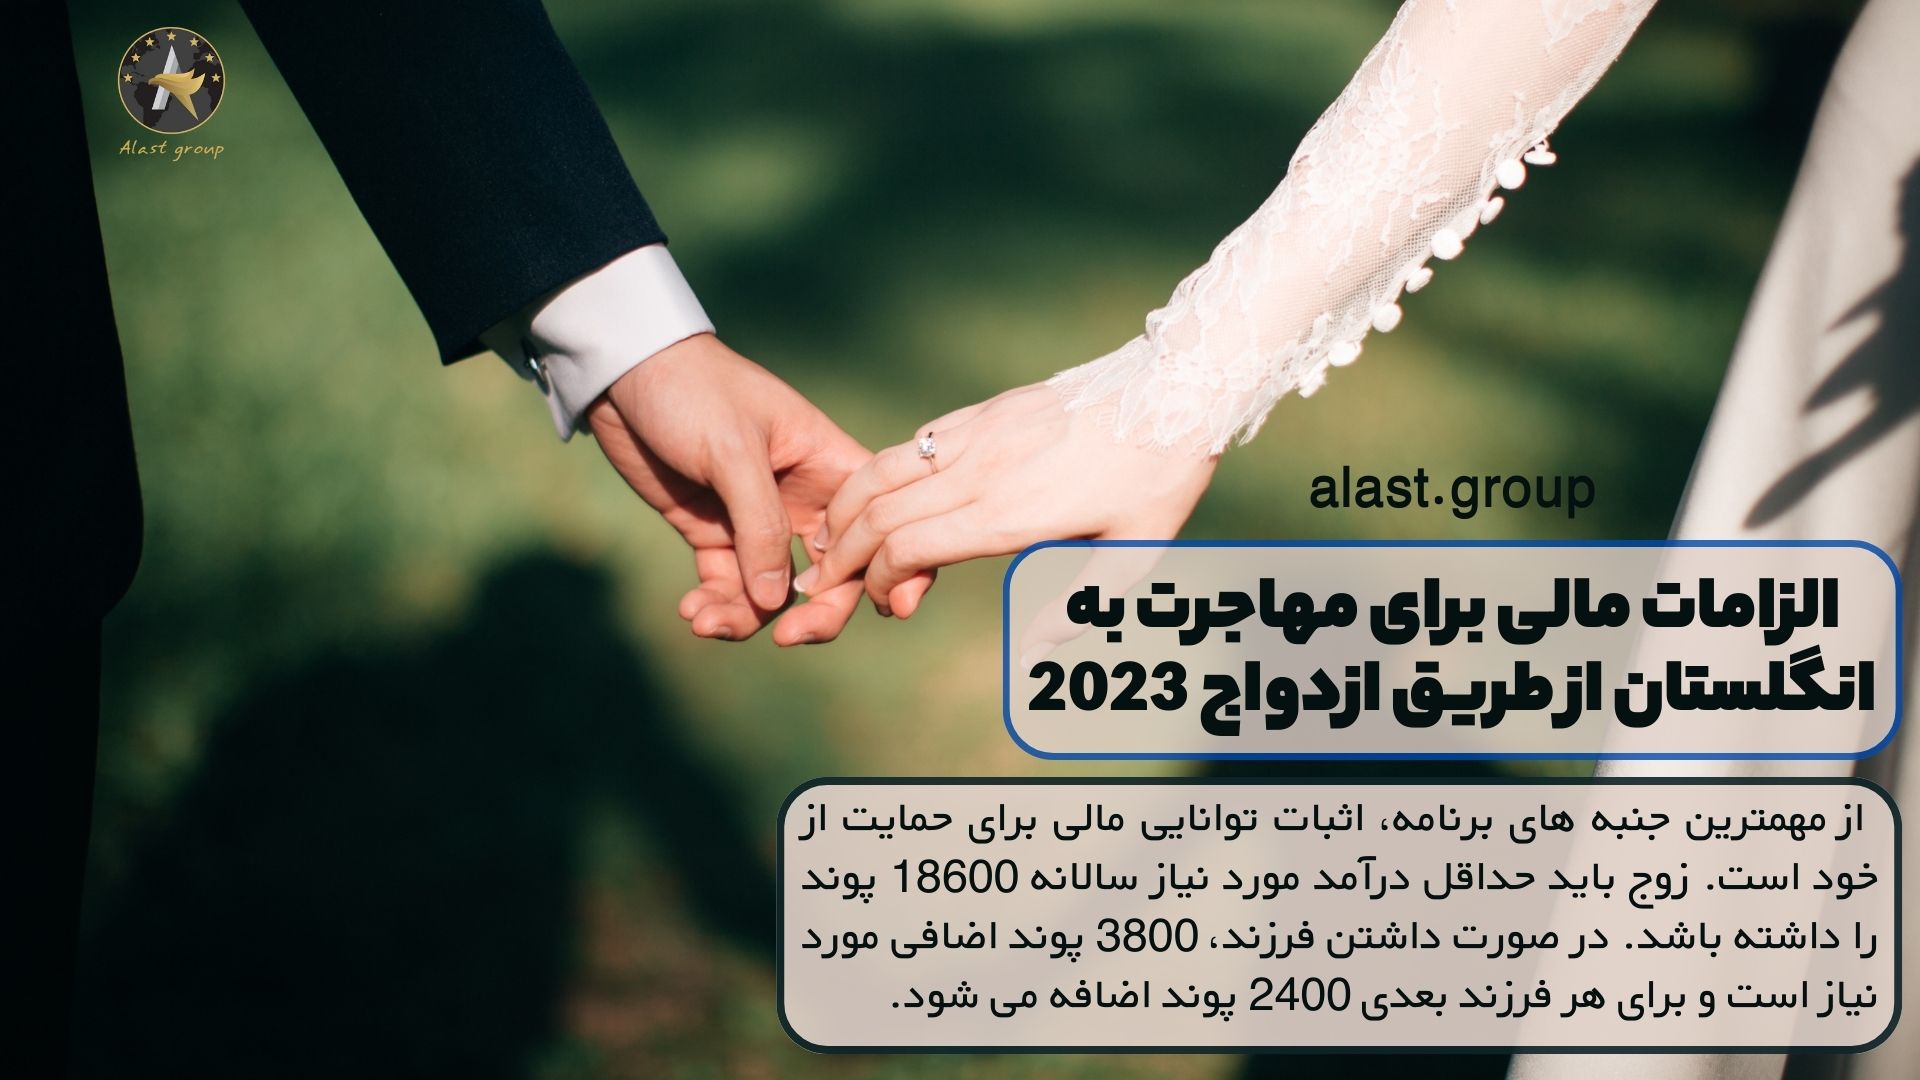 الزامات مالی برای مهاجرت به انگلستان از طریق ازدواج 2023